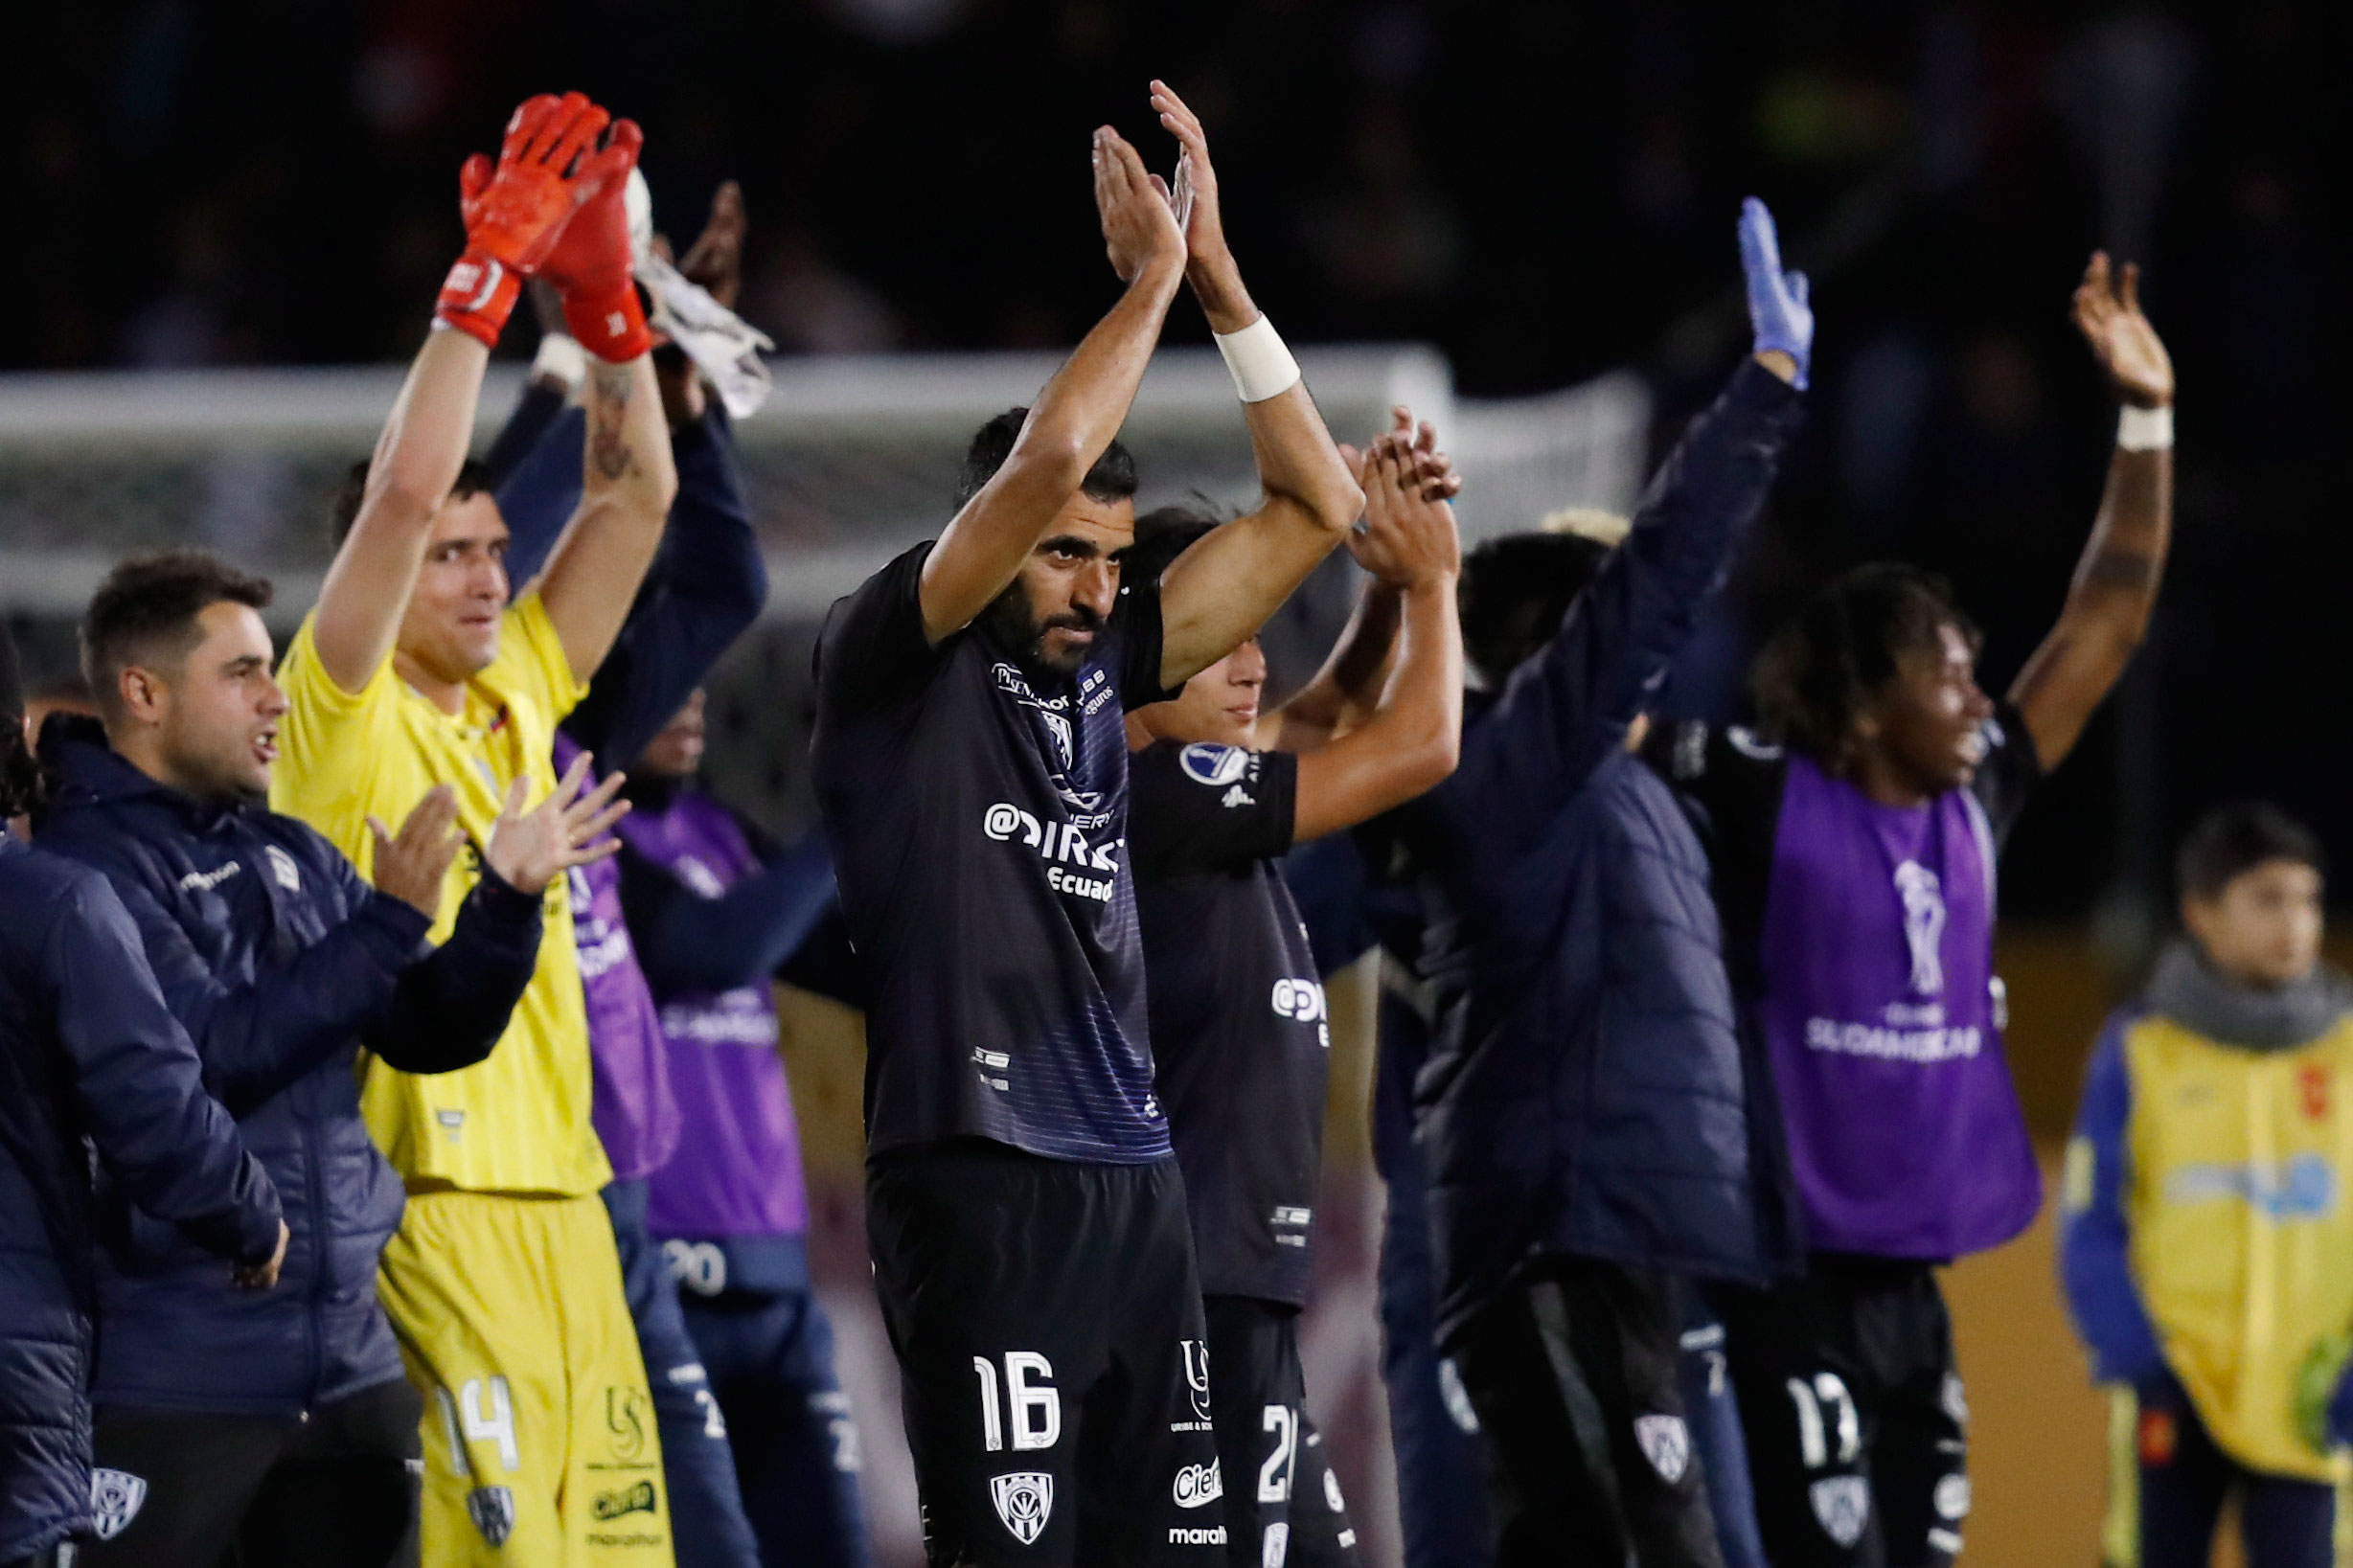 Underdogs Colon, IDV reach Copa Sudamericana final